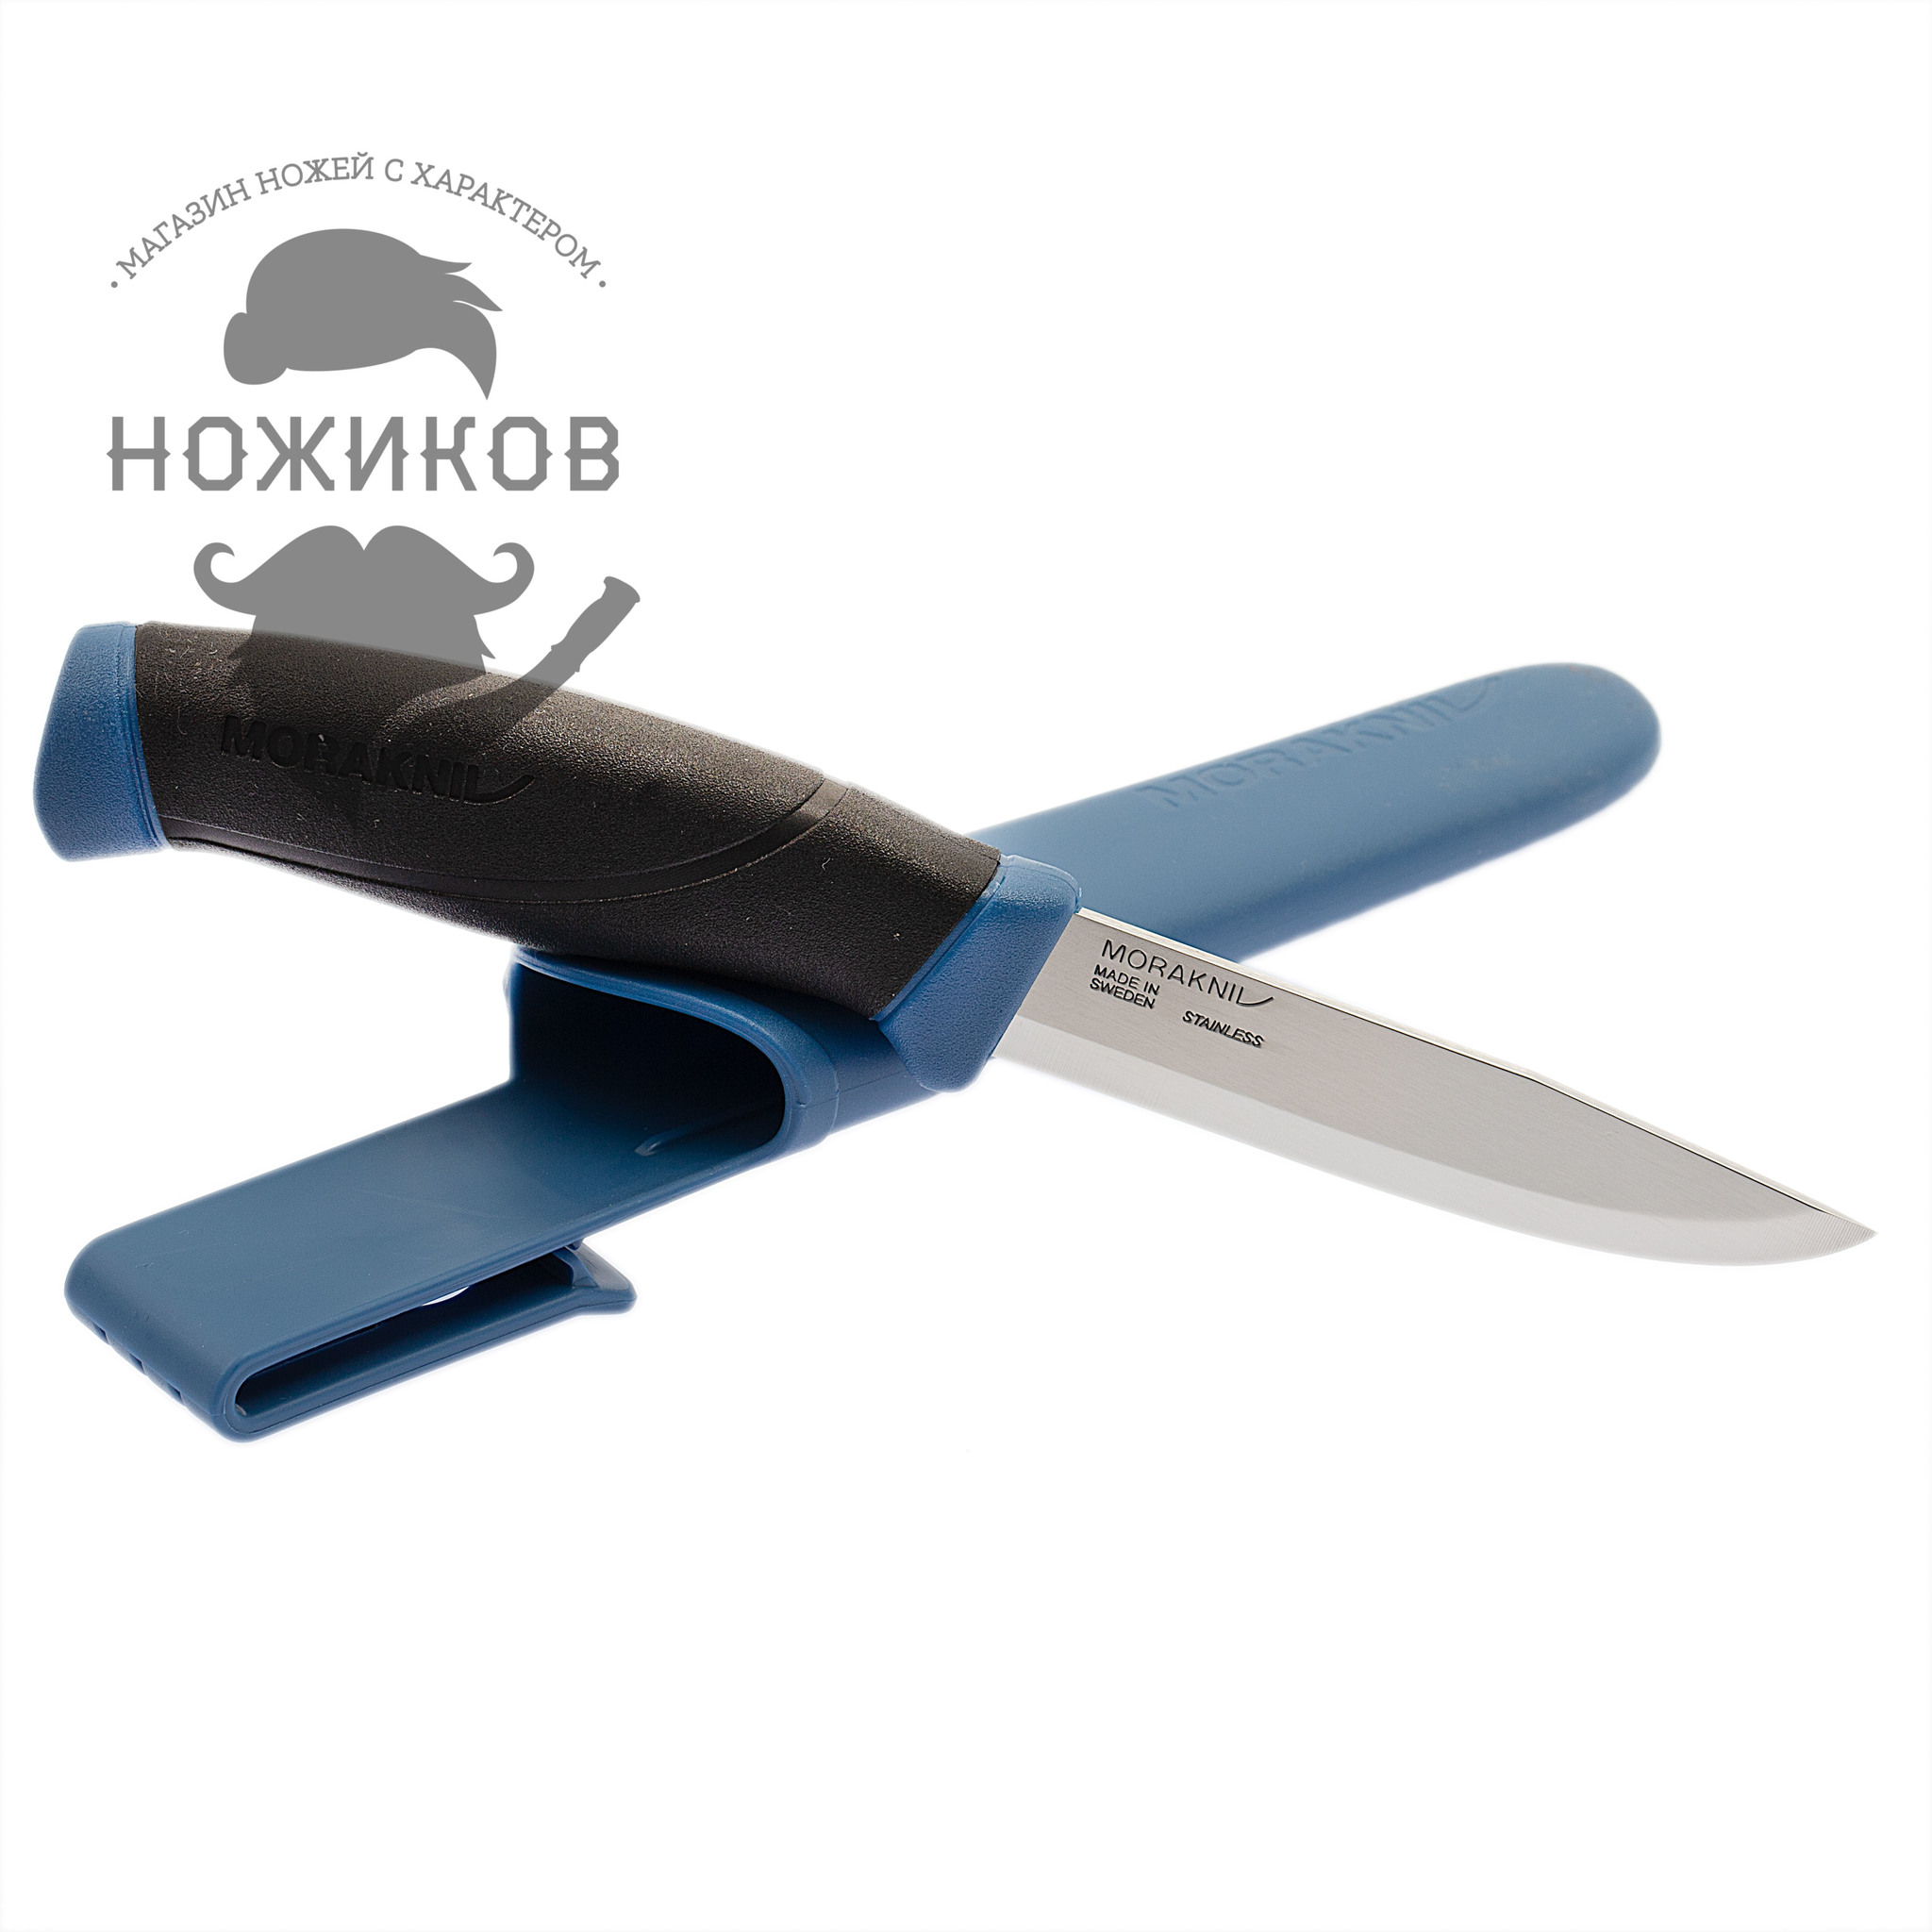 Нож с фиксированным лезвием Morakniv Companion Navy Blue, сталь Sandvik 12C27, рукоять резина/пластик - фото 2